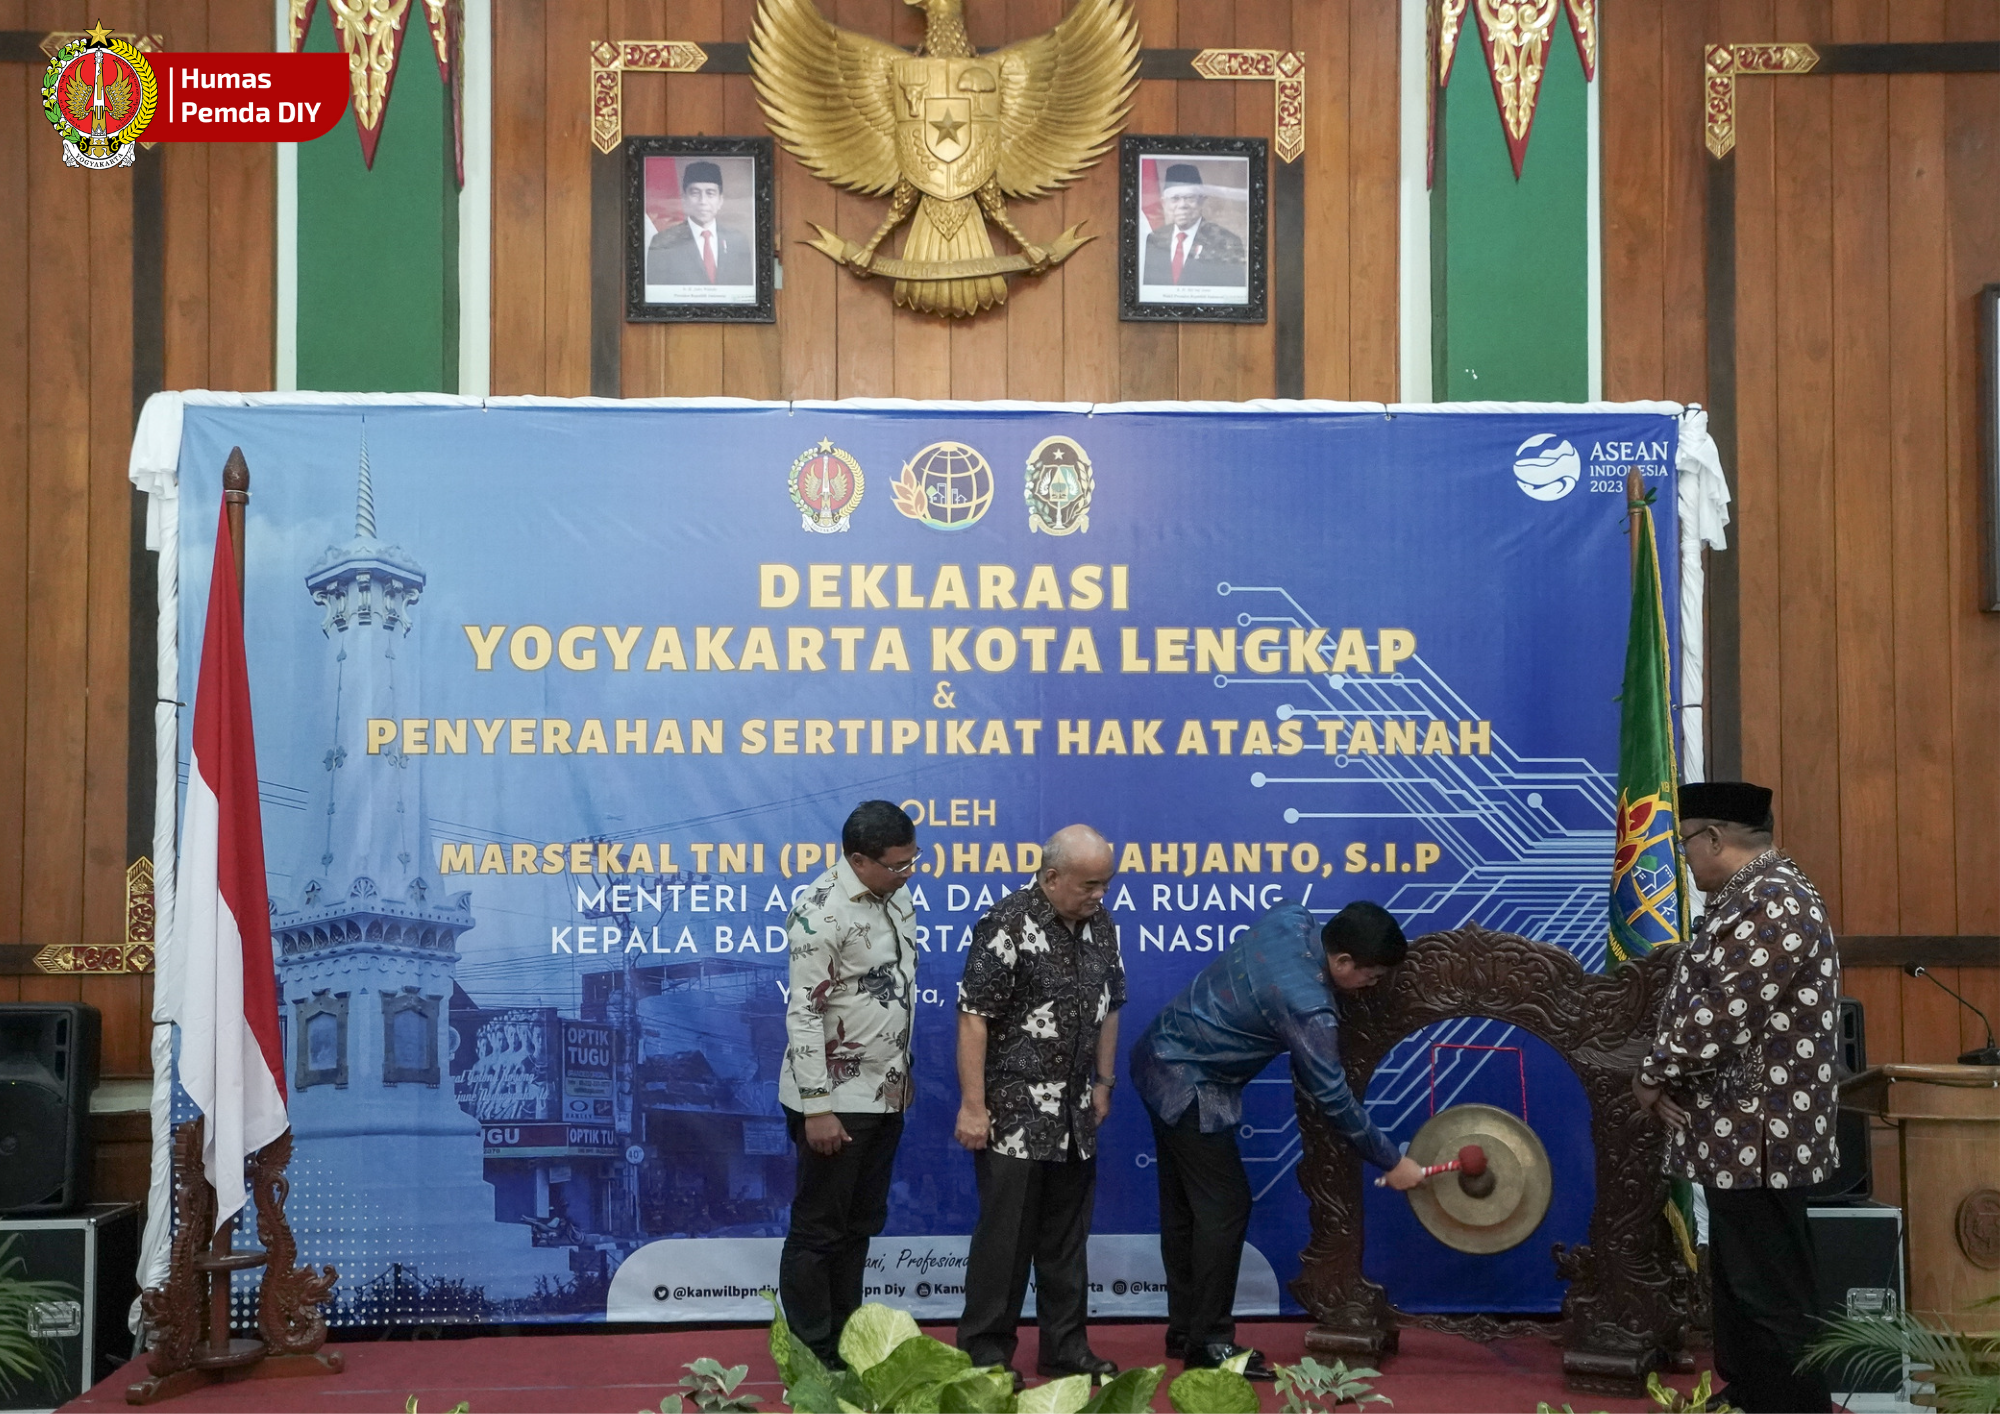  Yogyakarta Ditetapkan Jadi Kota Lengkap